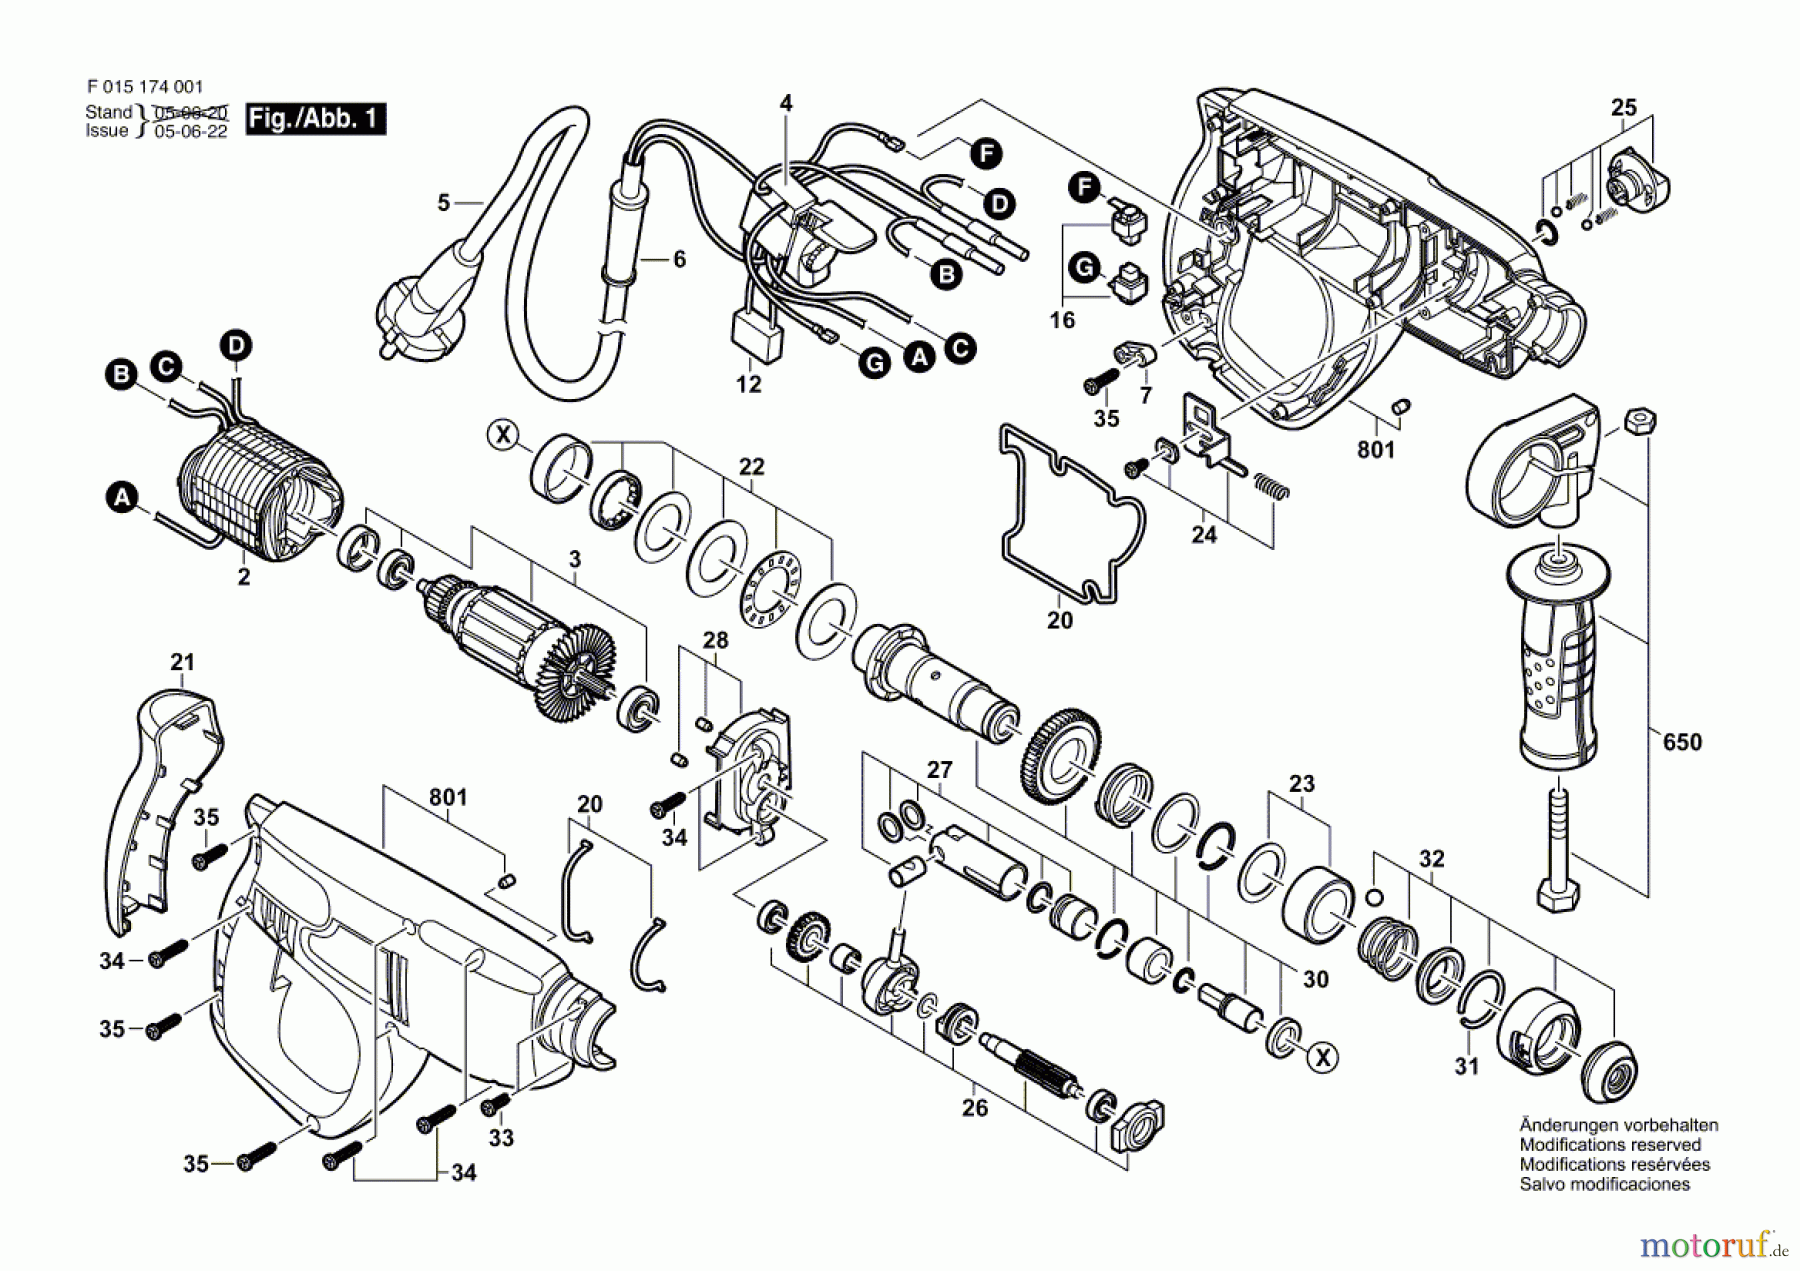  Bosch Werkzeug Bohrhammer 1703 Seite 1